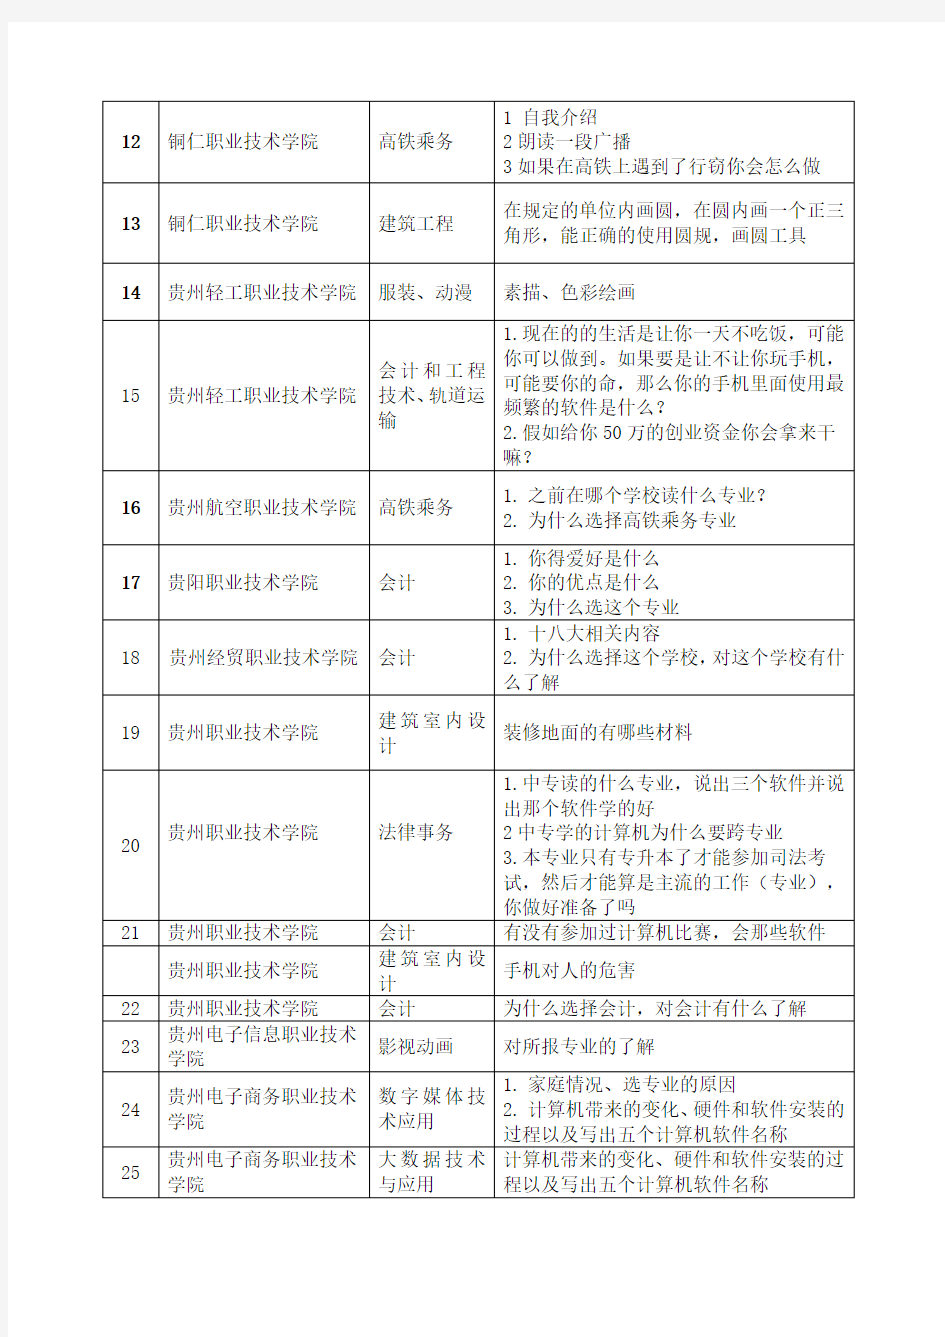 2019年贵州省中职单报高职分类考试面试专业技能题目